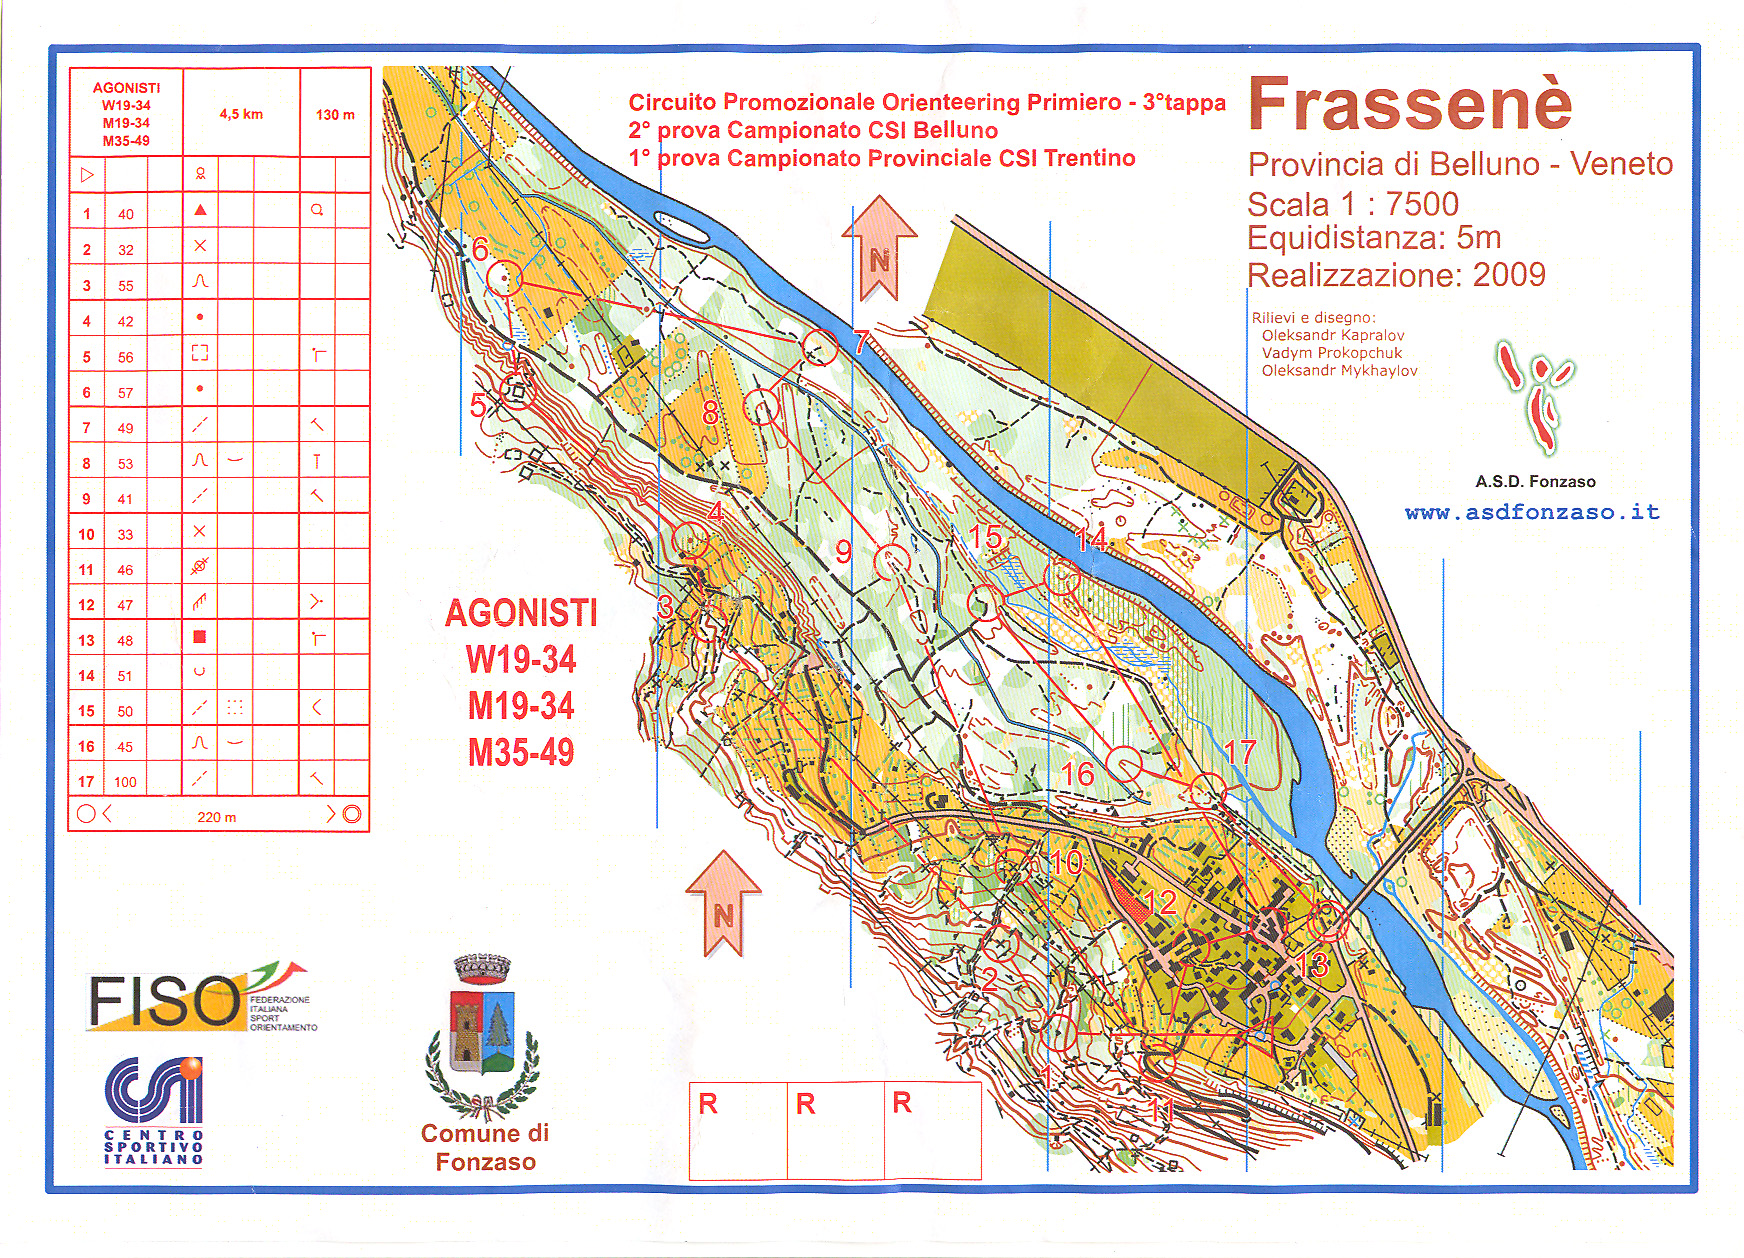 1^ prova Campionato Provinciale CSI Trentino 2015 (22.03.2015)